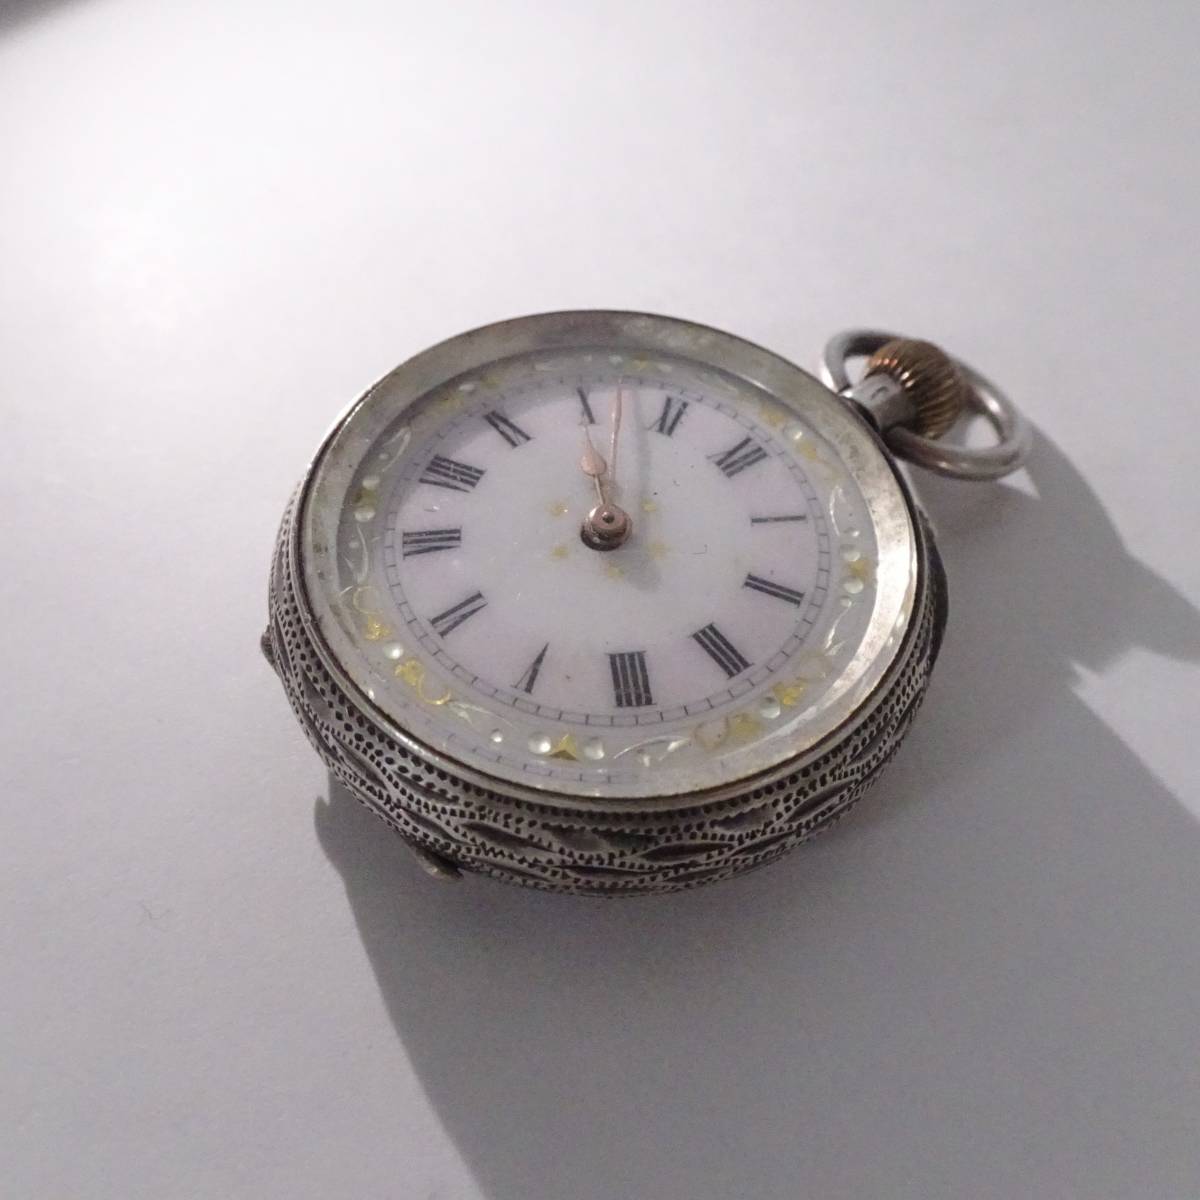 1918年 ロレックス懐中時計のムーブメント使用 カスタム時計